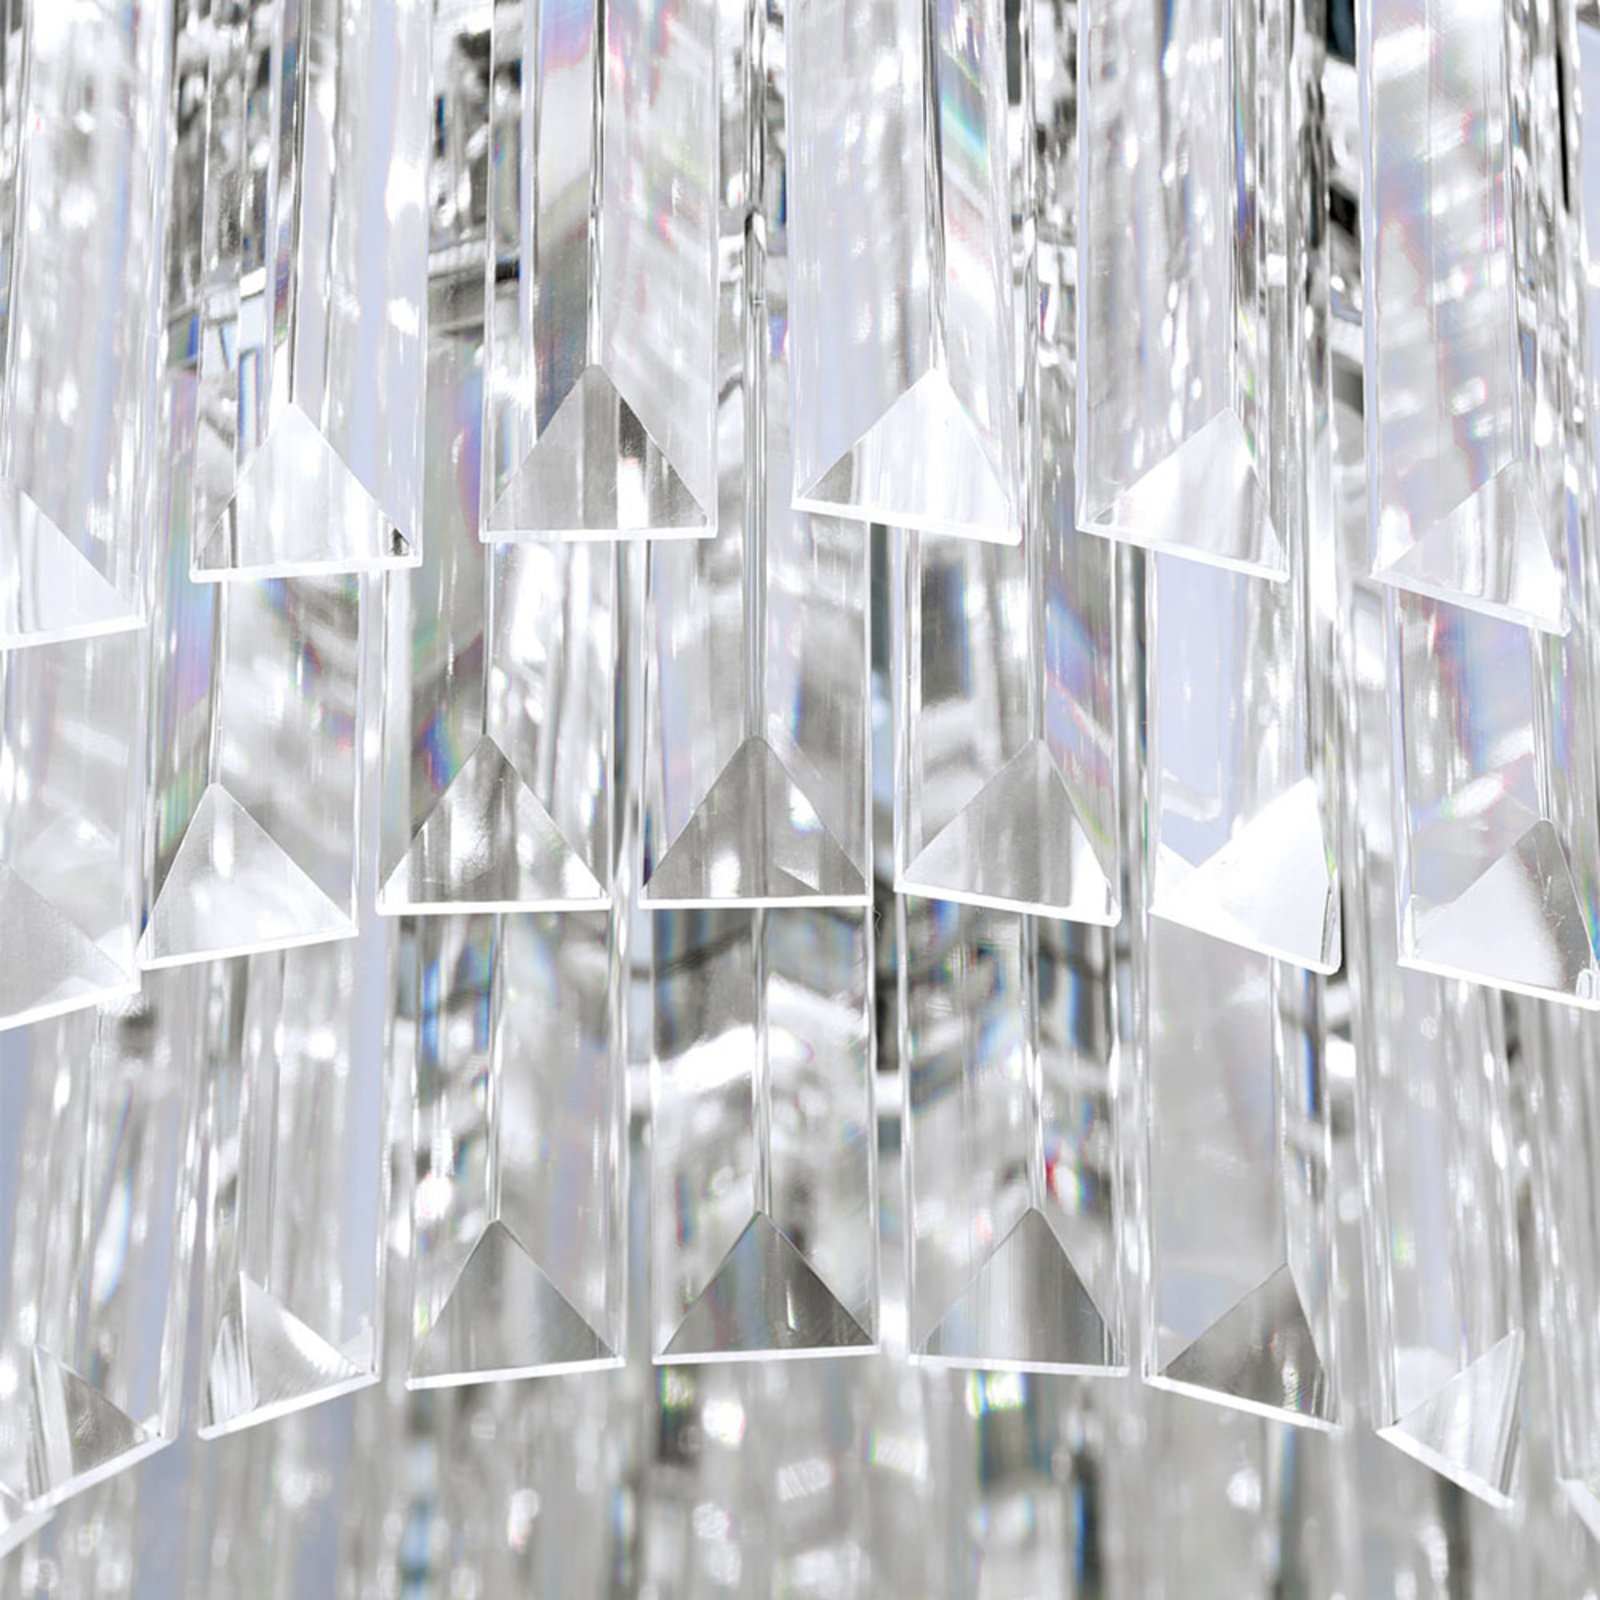 Φωτιστικό οροφής LED Prism, χρώμιο, Ø 35 cm